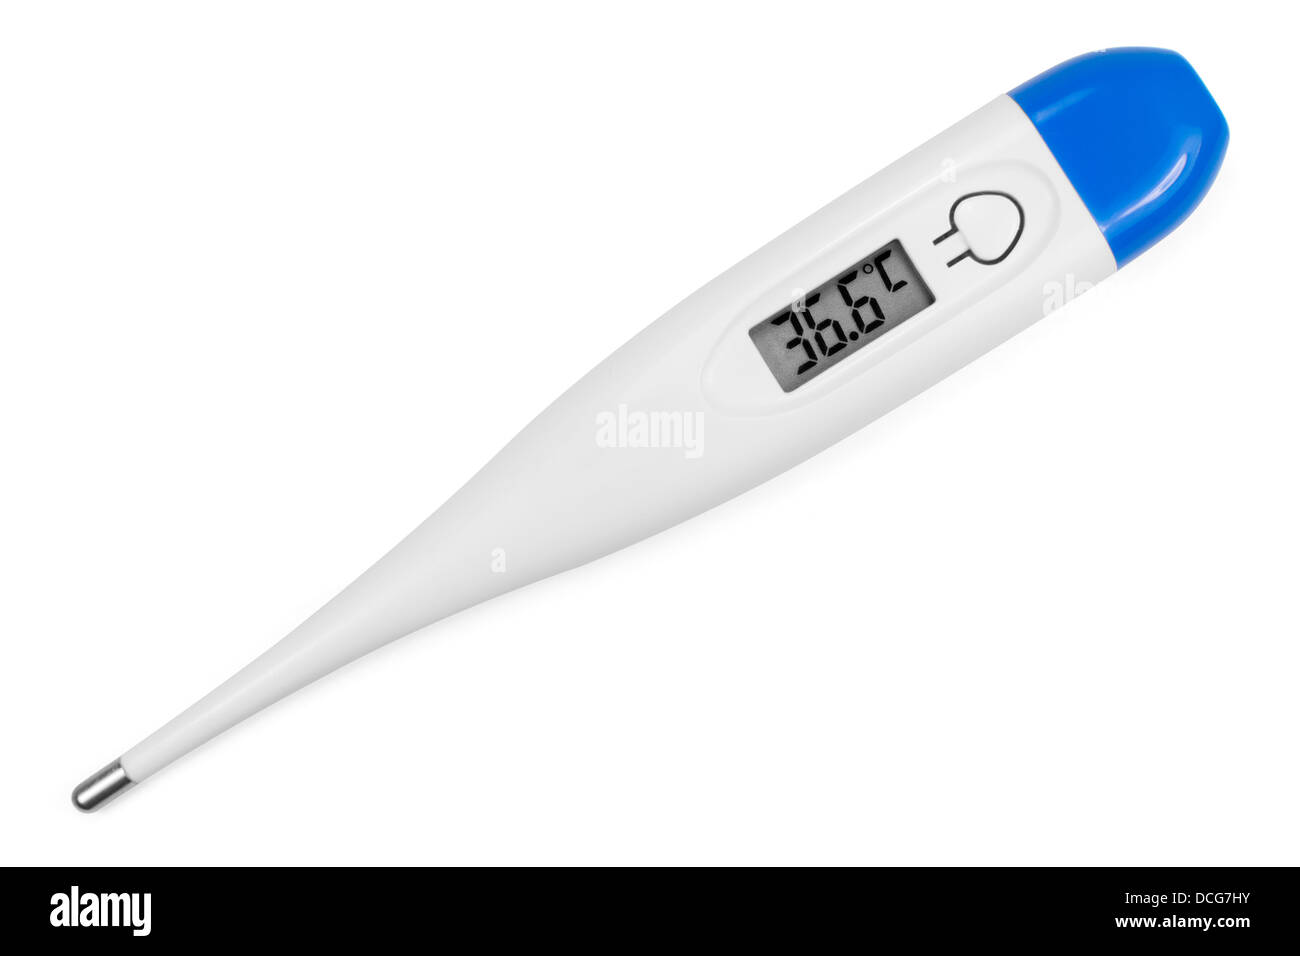 Thermomètre électronique corps sain d'afficher la température du corps  humain 36,6 degrés C (Celsius). Isolé sur blanc. Clipping path Photo Stock  - Alamy